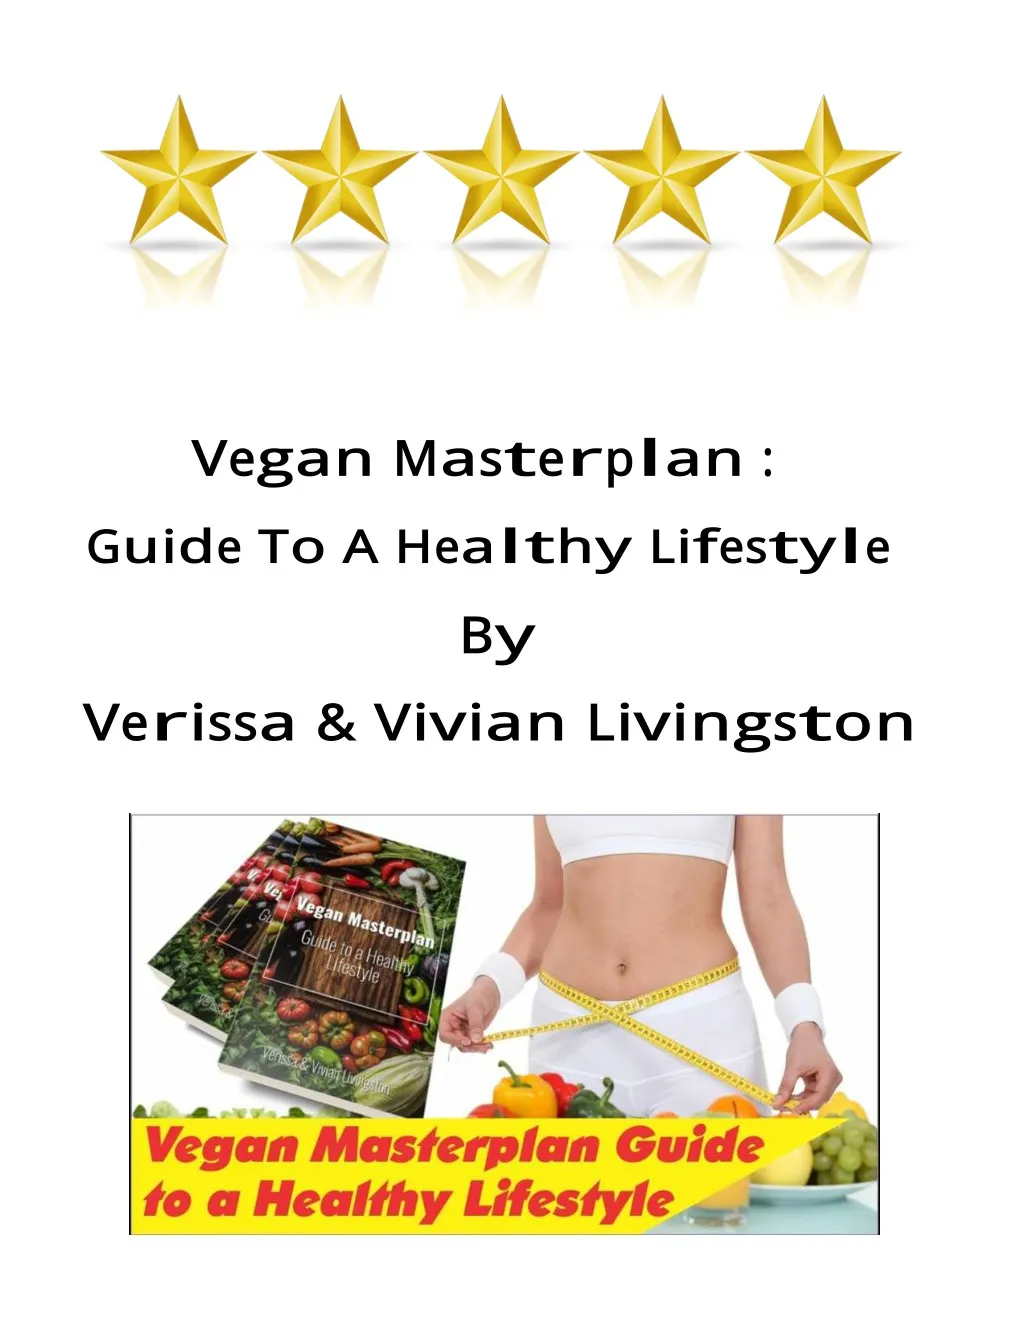 vegan masterplan pdf ebook free download verissa